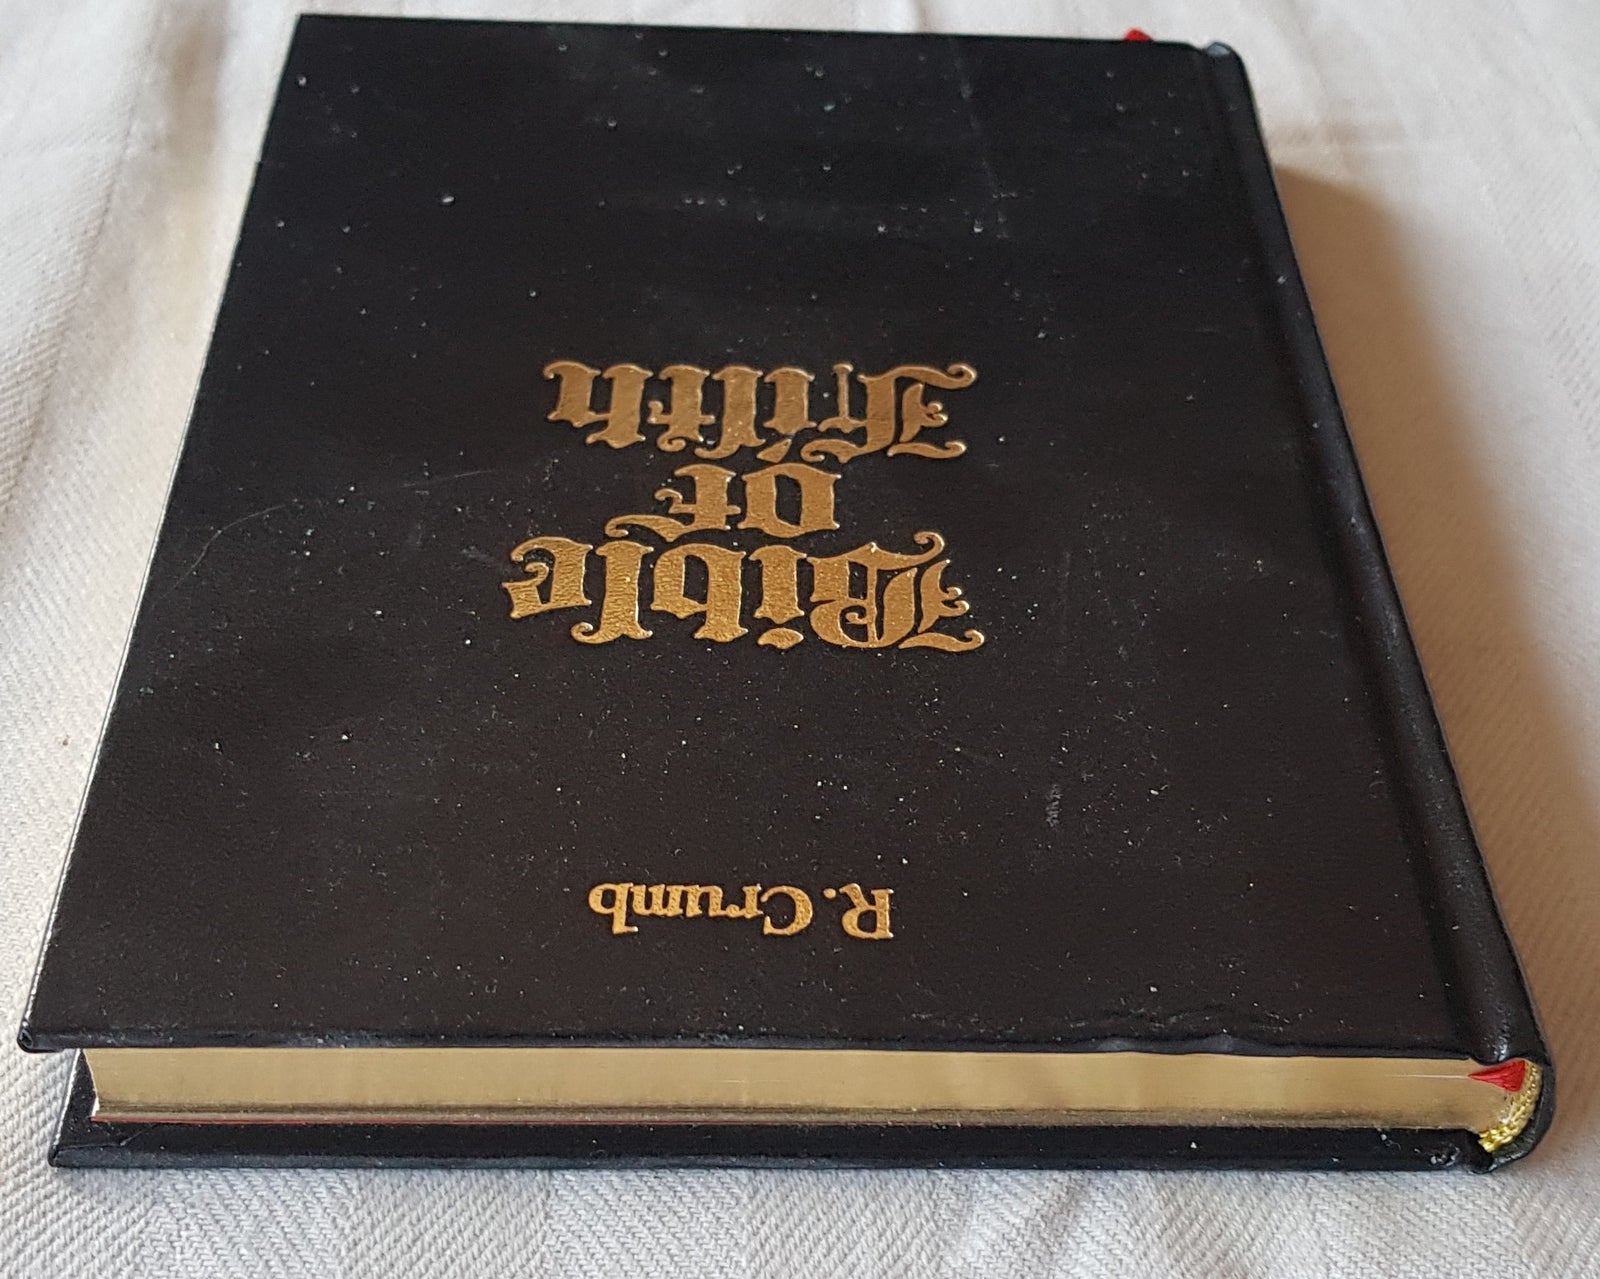 Bible Of Filth, Robert Crumb, Tegneserie